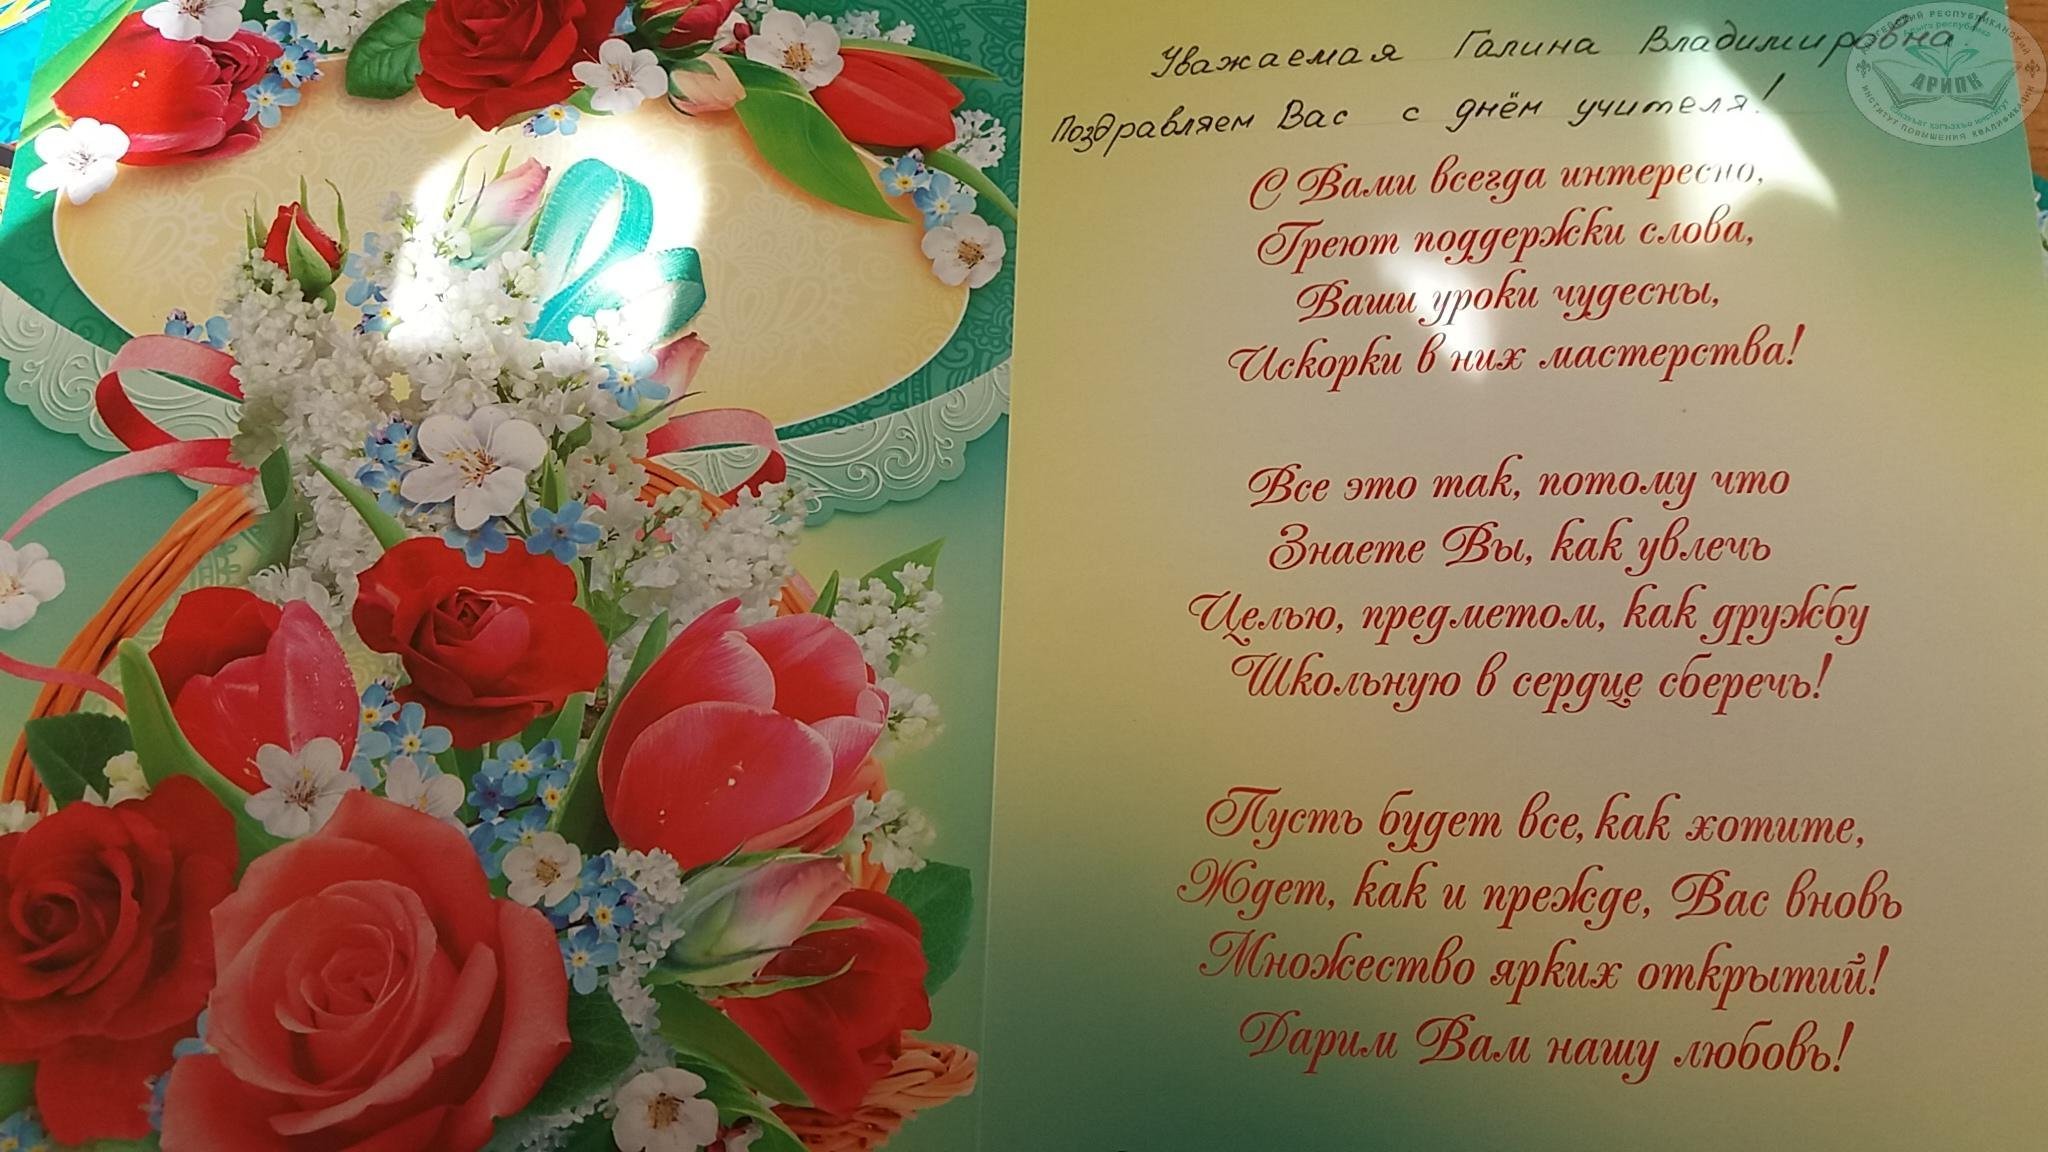 Поздравления с днем юбилеем на татарском. Поздравление с днем рождения на татарском открытка. Поздравительные открытки на татарском языке. Поздравления с днём рождения на татарском языке. Поздравления с днём с днём рождения на татарском языке.